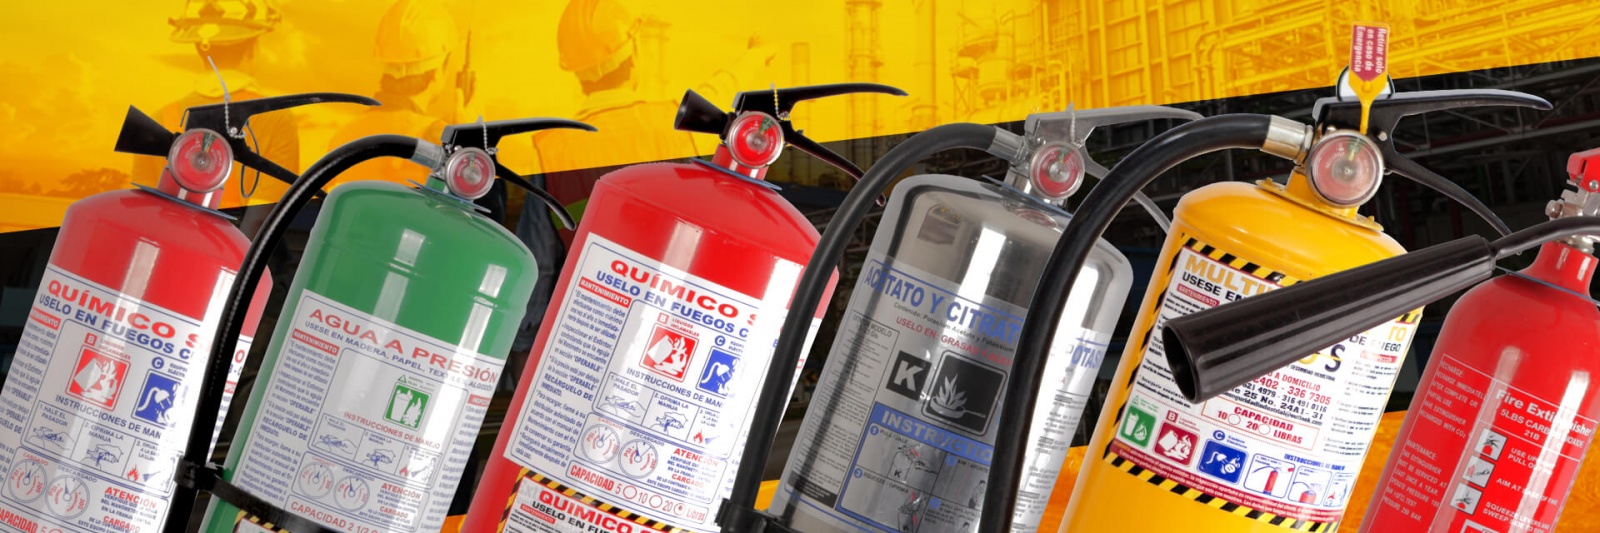 EXTINTOR CO2 DIÓXIDO CARBONO IMPLESEG 5 LBS - Implementos de seguridad  industrial y bomberil, extintores